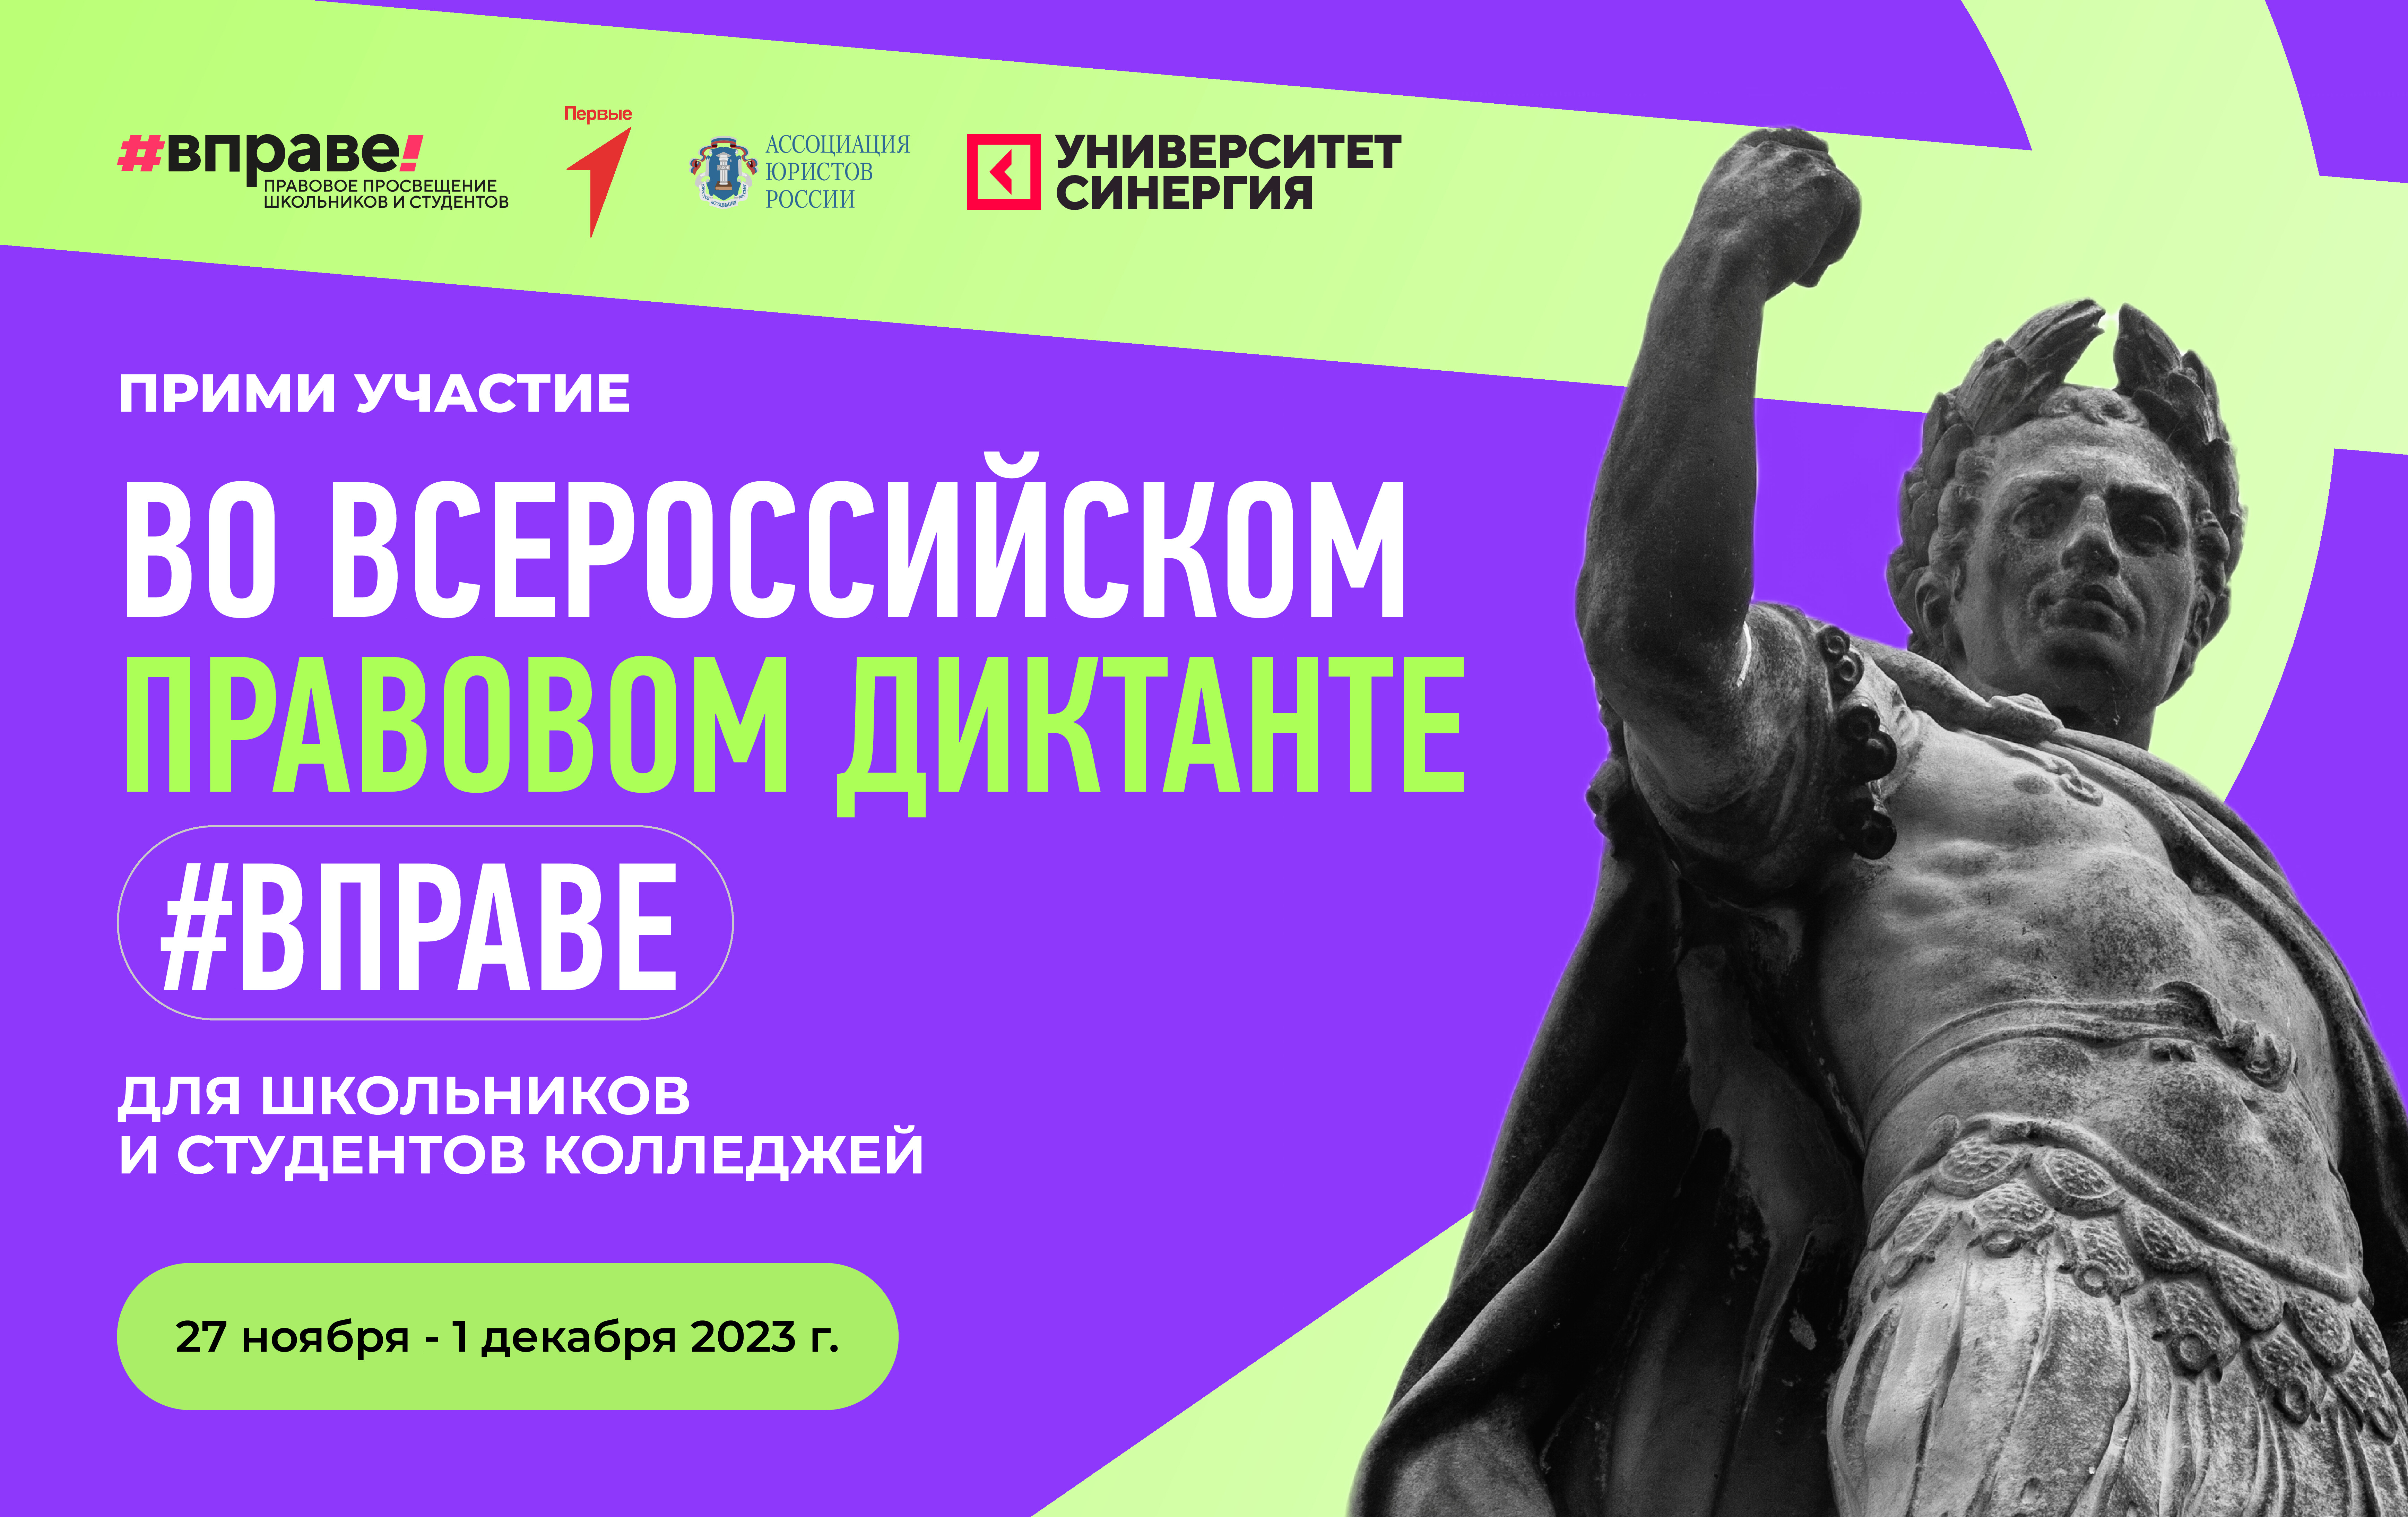 27 ноября стартовал Всероссийский правовой диктант для школьников и студентов колледжей #ВПРАВЕ.